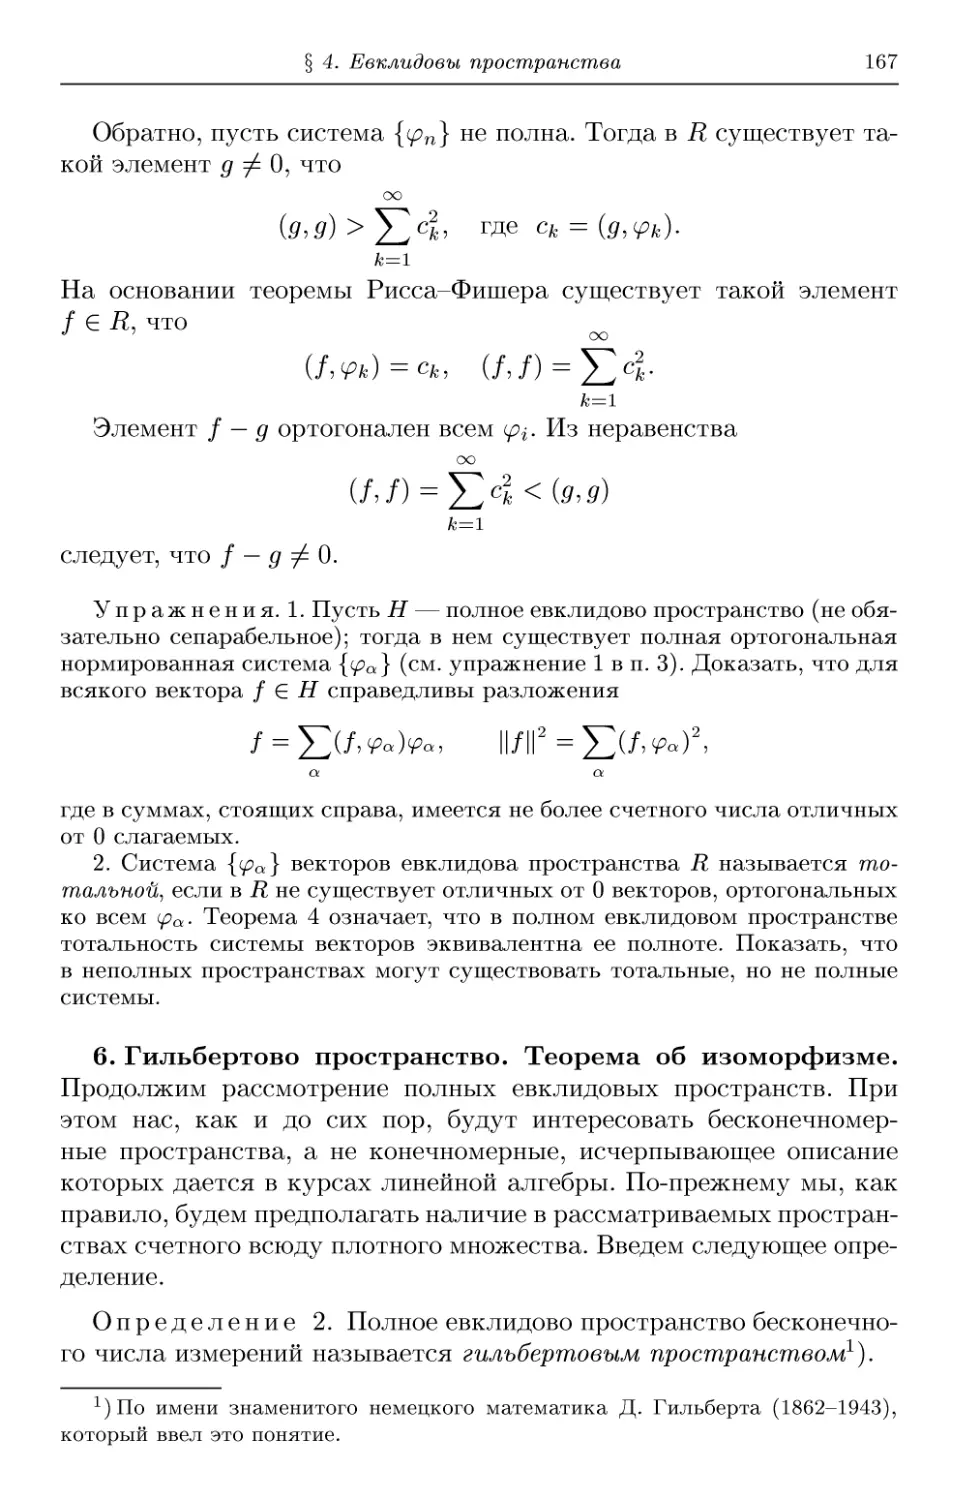 6. Гильбертово пространство. Теорема об изоморфизме